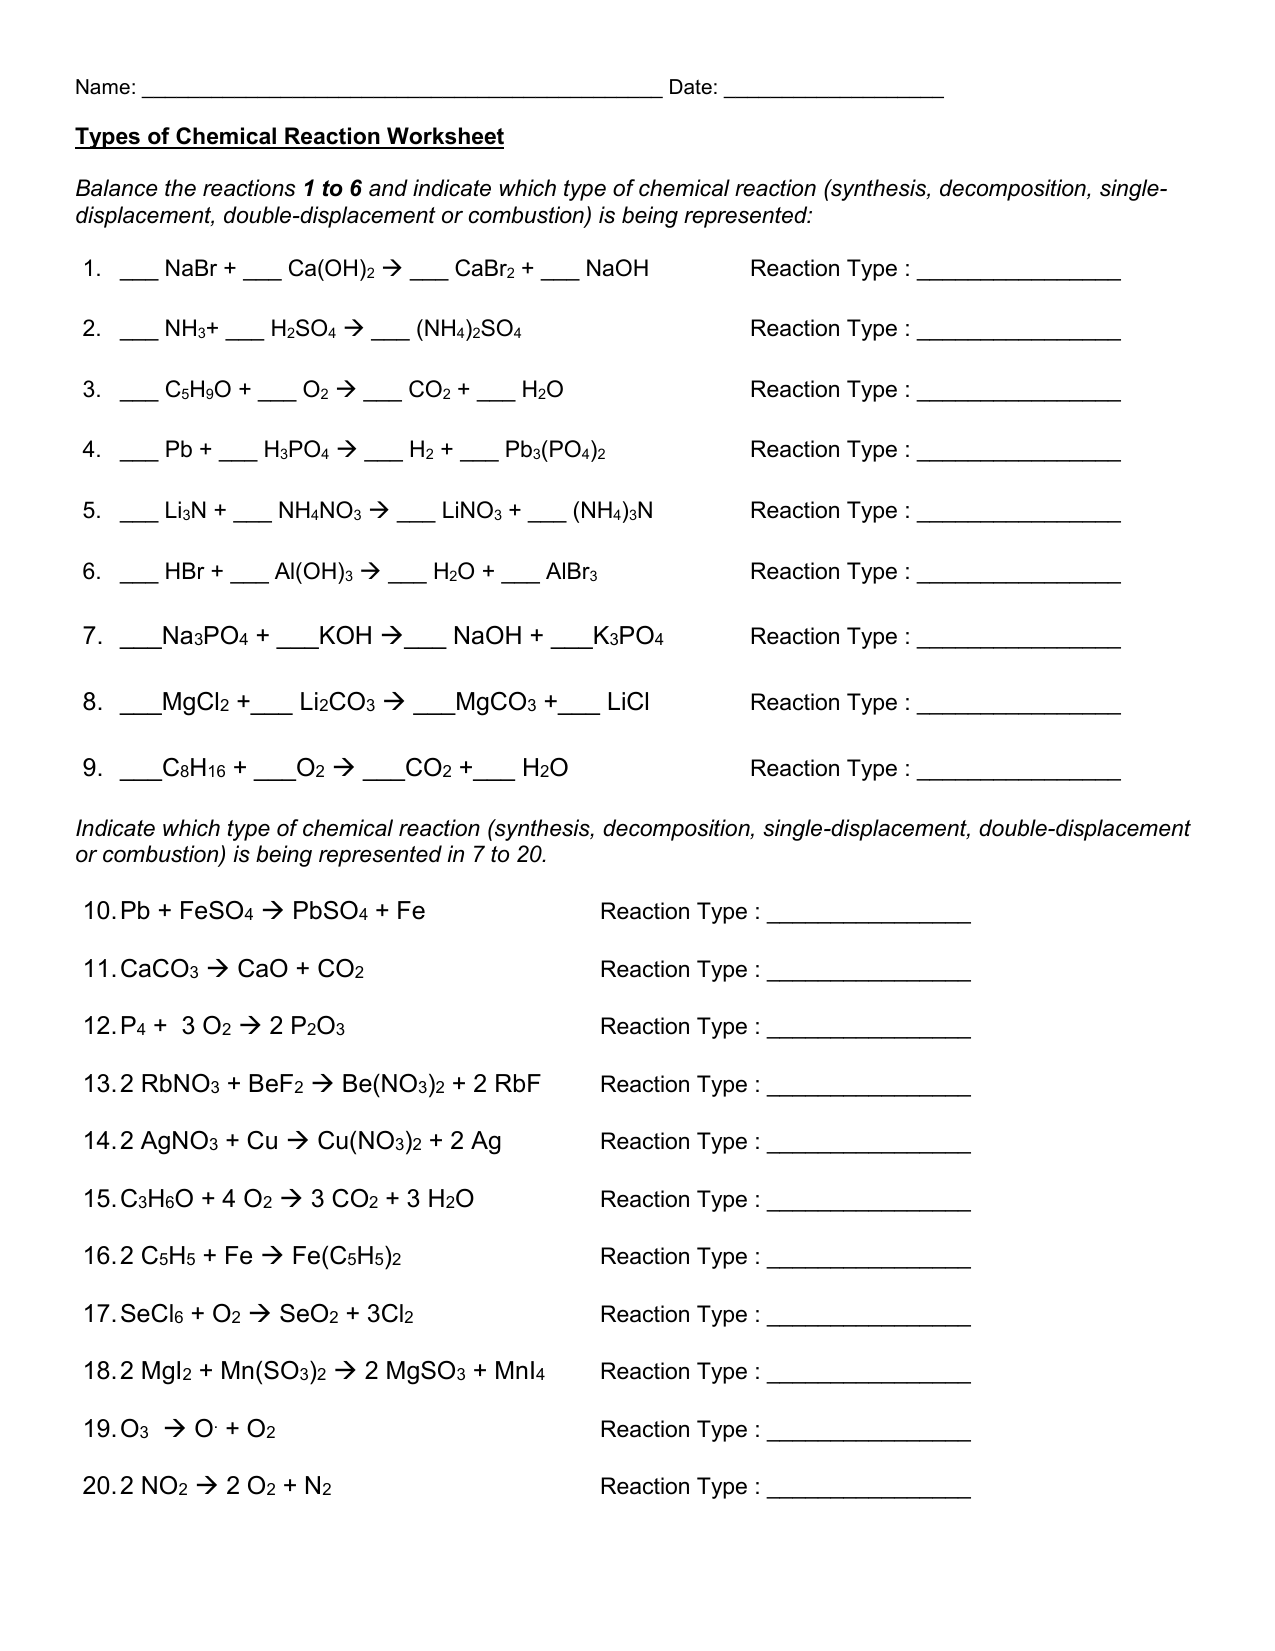 Types of Chemical Reaction Worksheet Regarding Chemical Reaction Type Worksheet